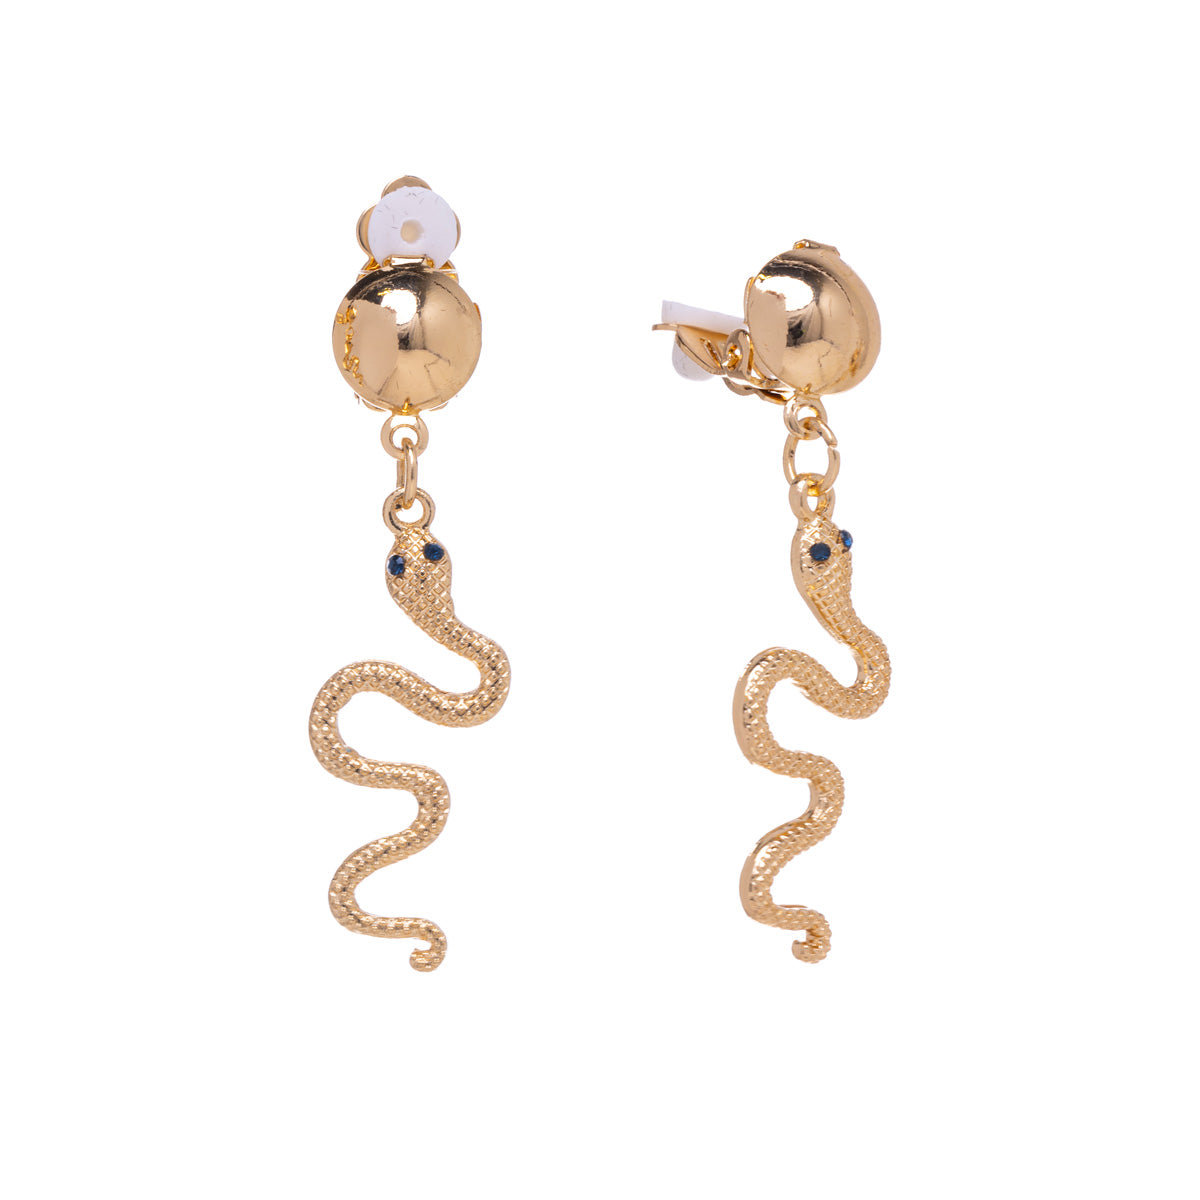 Hanging snake clip earrings